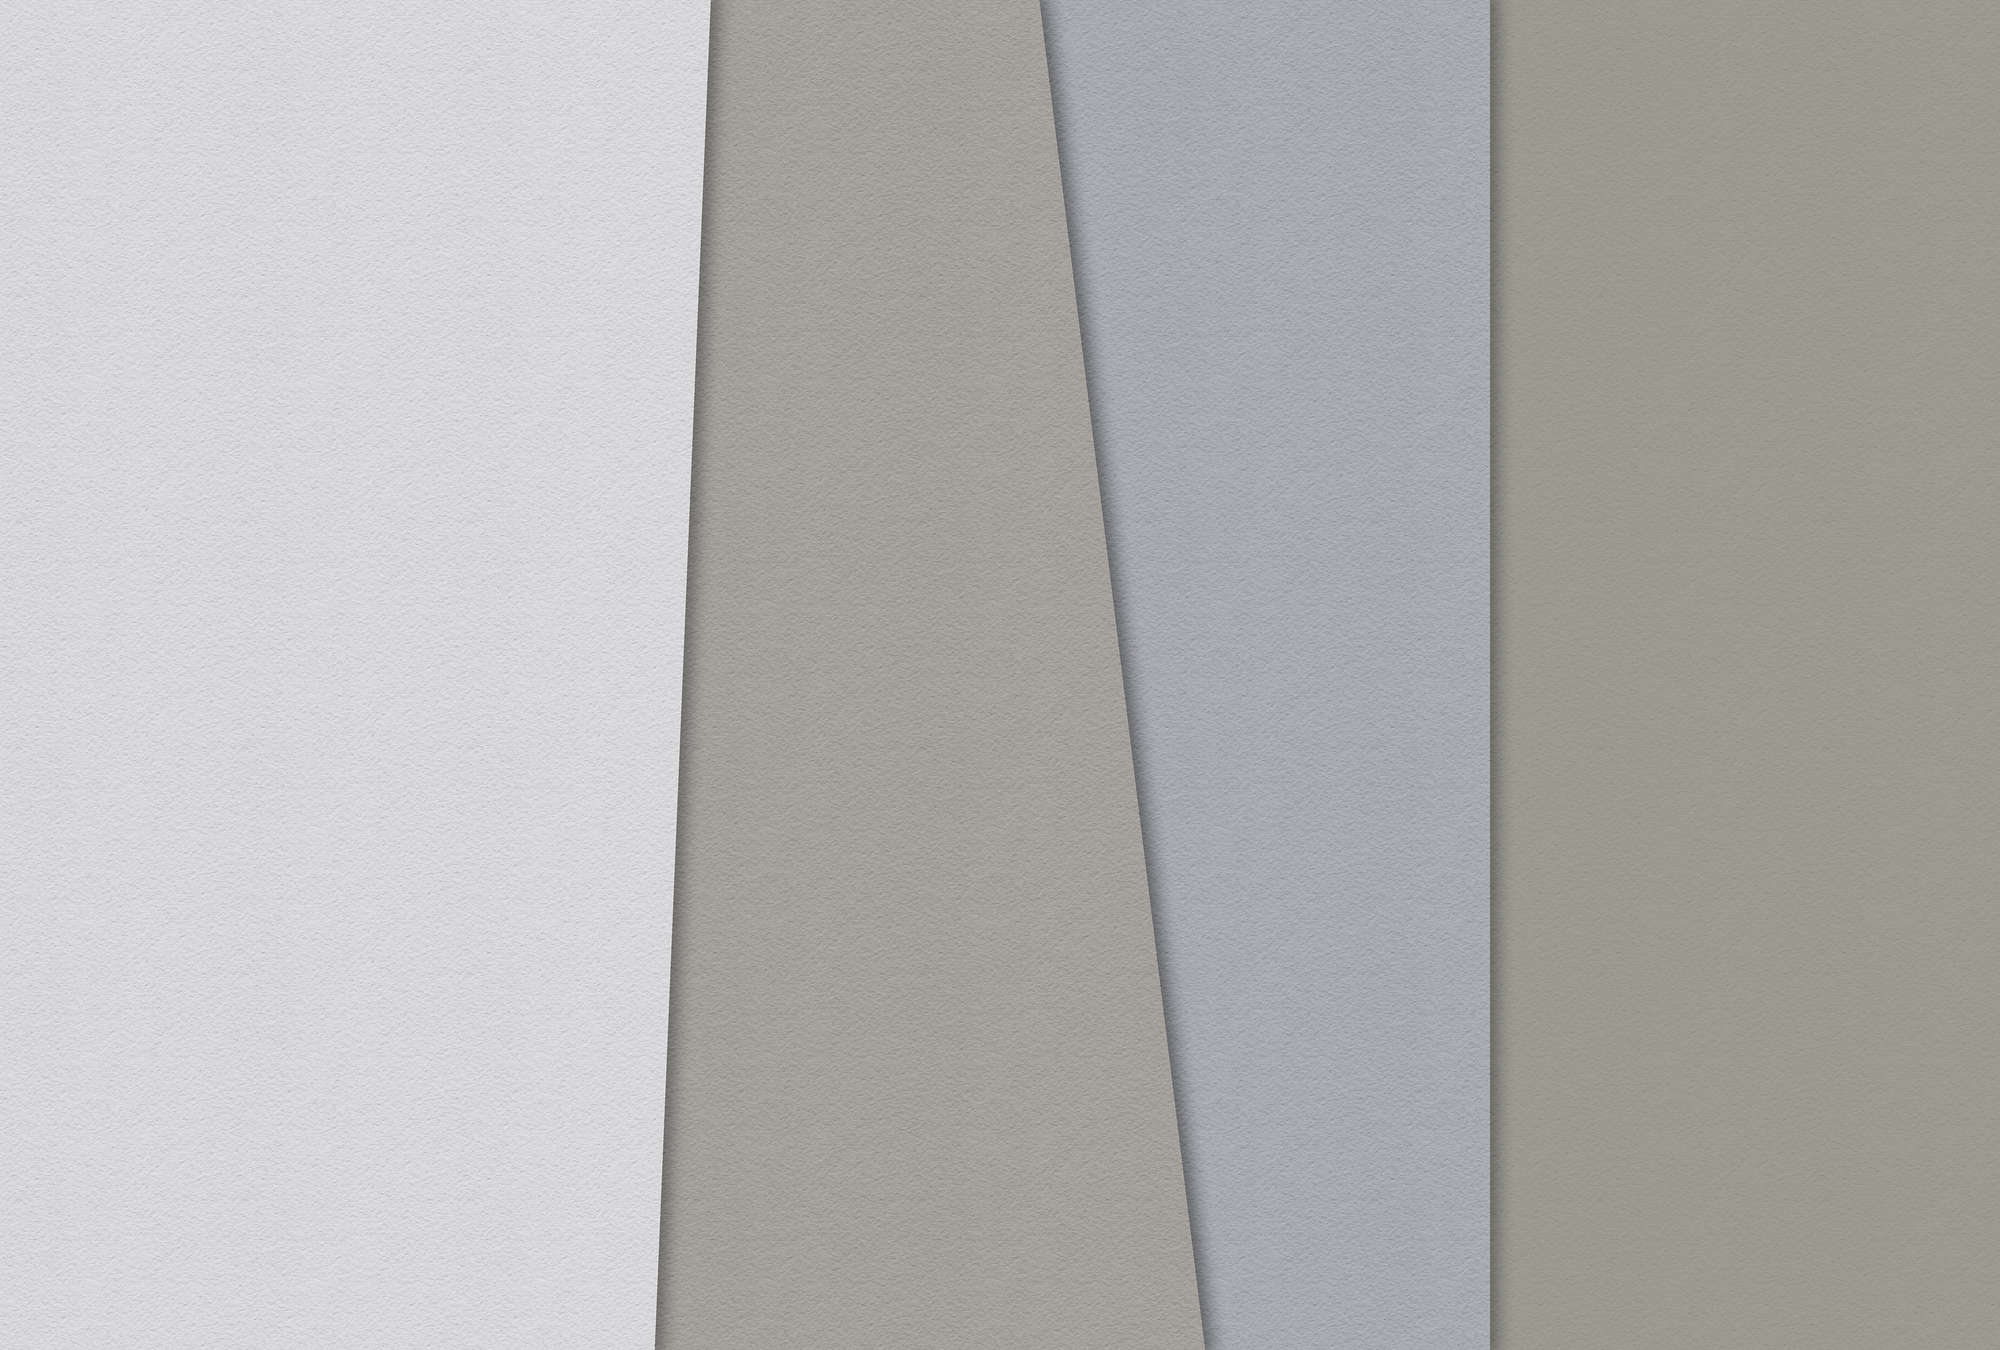             Papel estratificado 4 - Colorido mural minimalista en textura de papel hecho a mano - Azul, Crema | Vellón liso mate
        